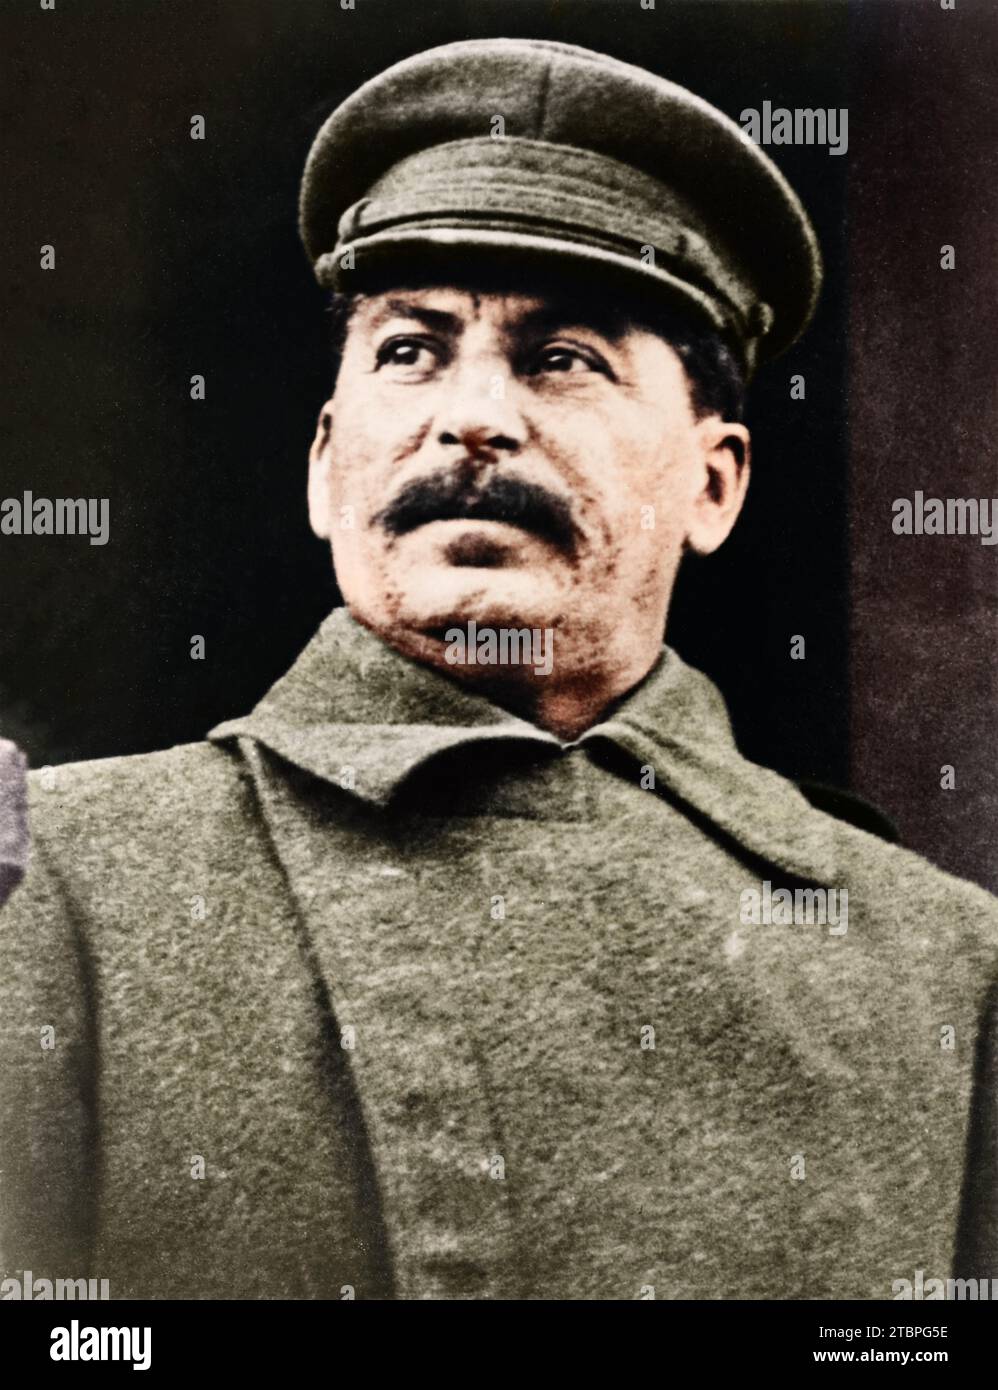 Porträt des Diktators und sowjetischen Führers Joseph Stalin aus dem Jahr 1934. Stockfoto